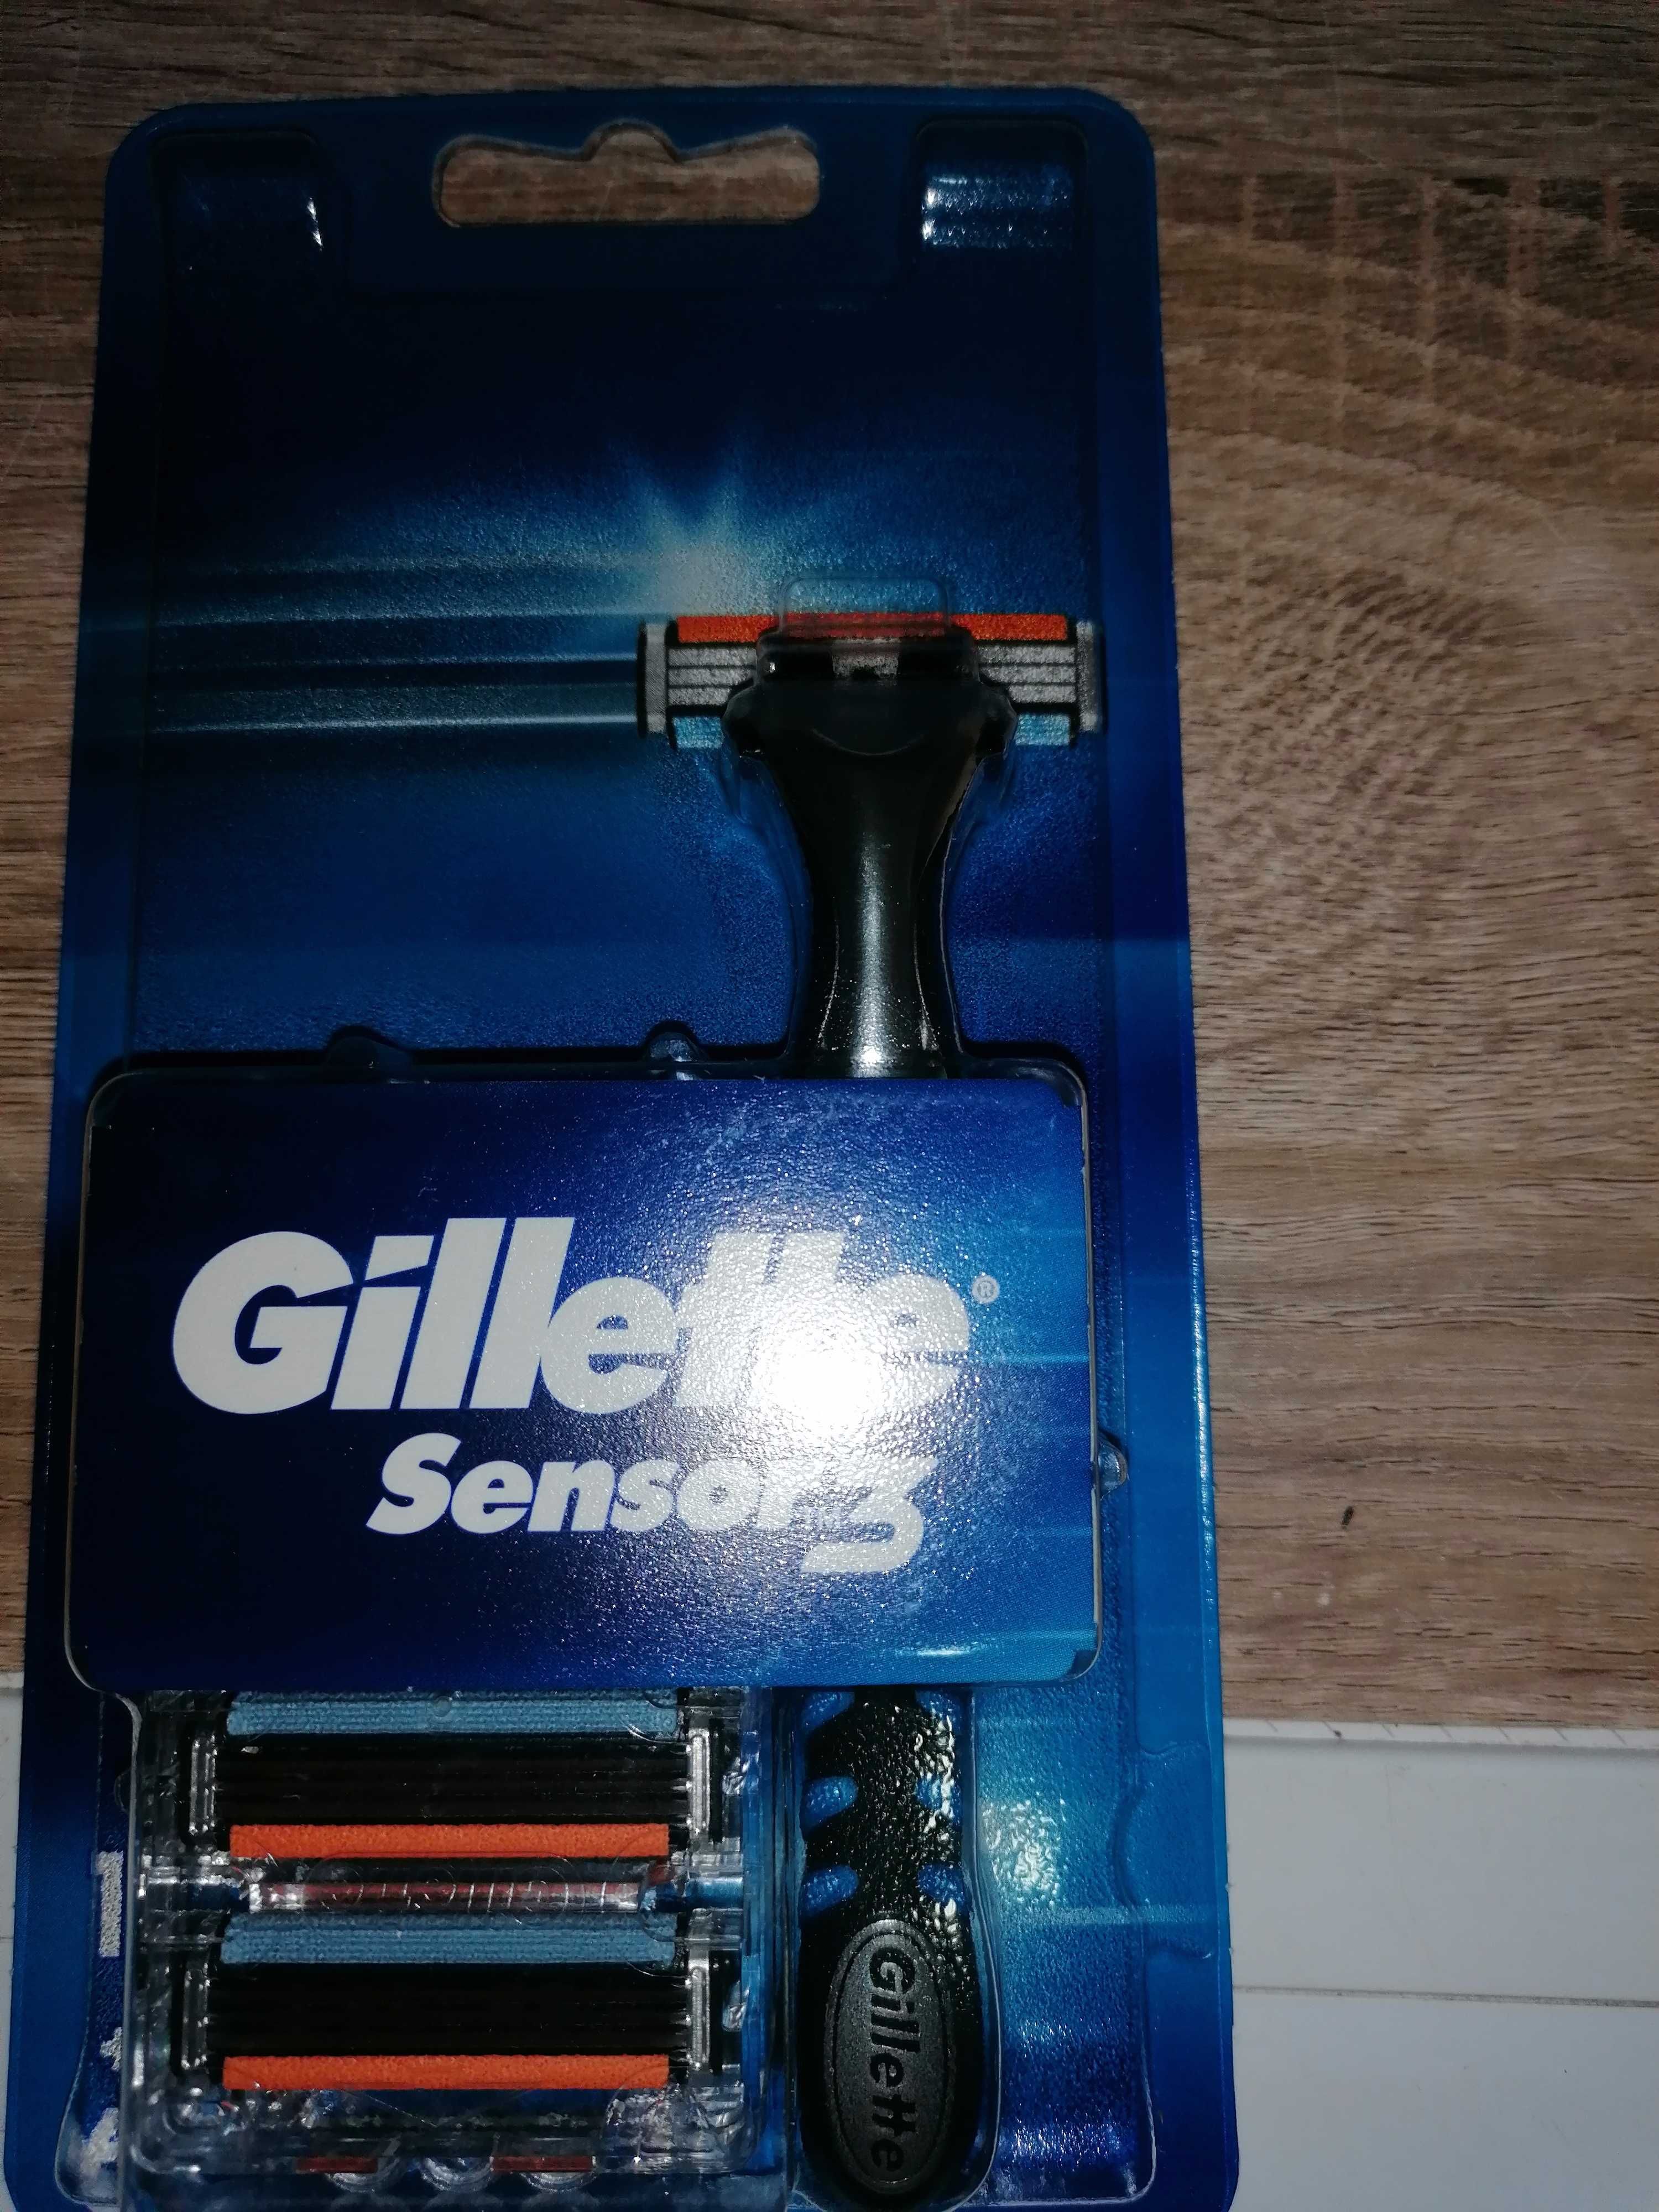 Maszynka do golenia Gillette